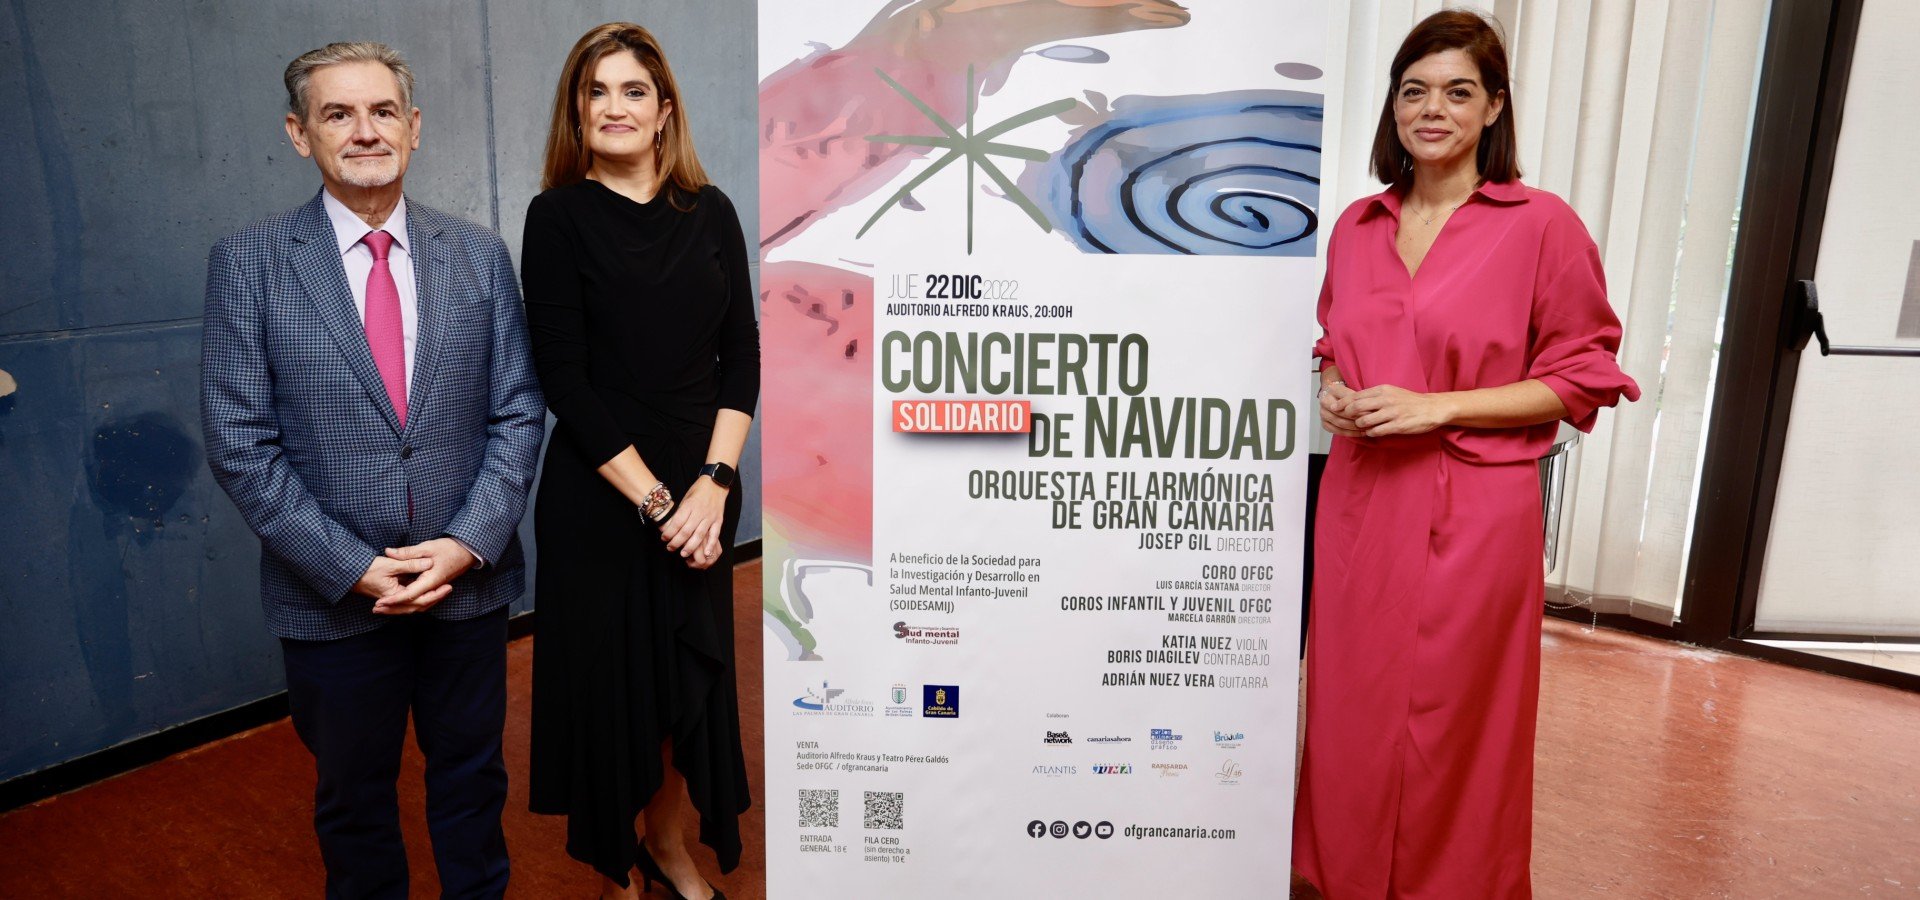 La Orquesta Filarmónica de Gran Canaria y sus Coros celebran el Concierto Solidario de Navidad del Cabildo de Gran Canaria y la Fundación DISA